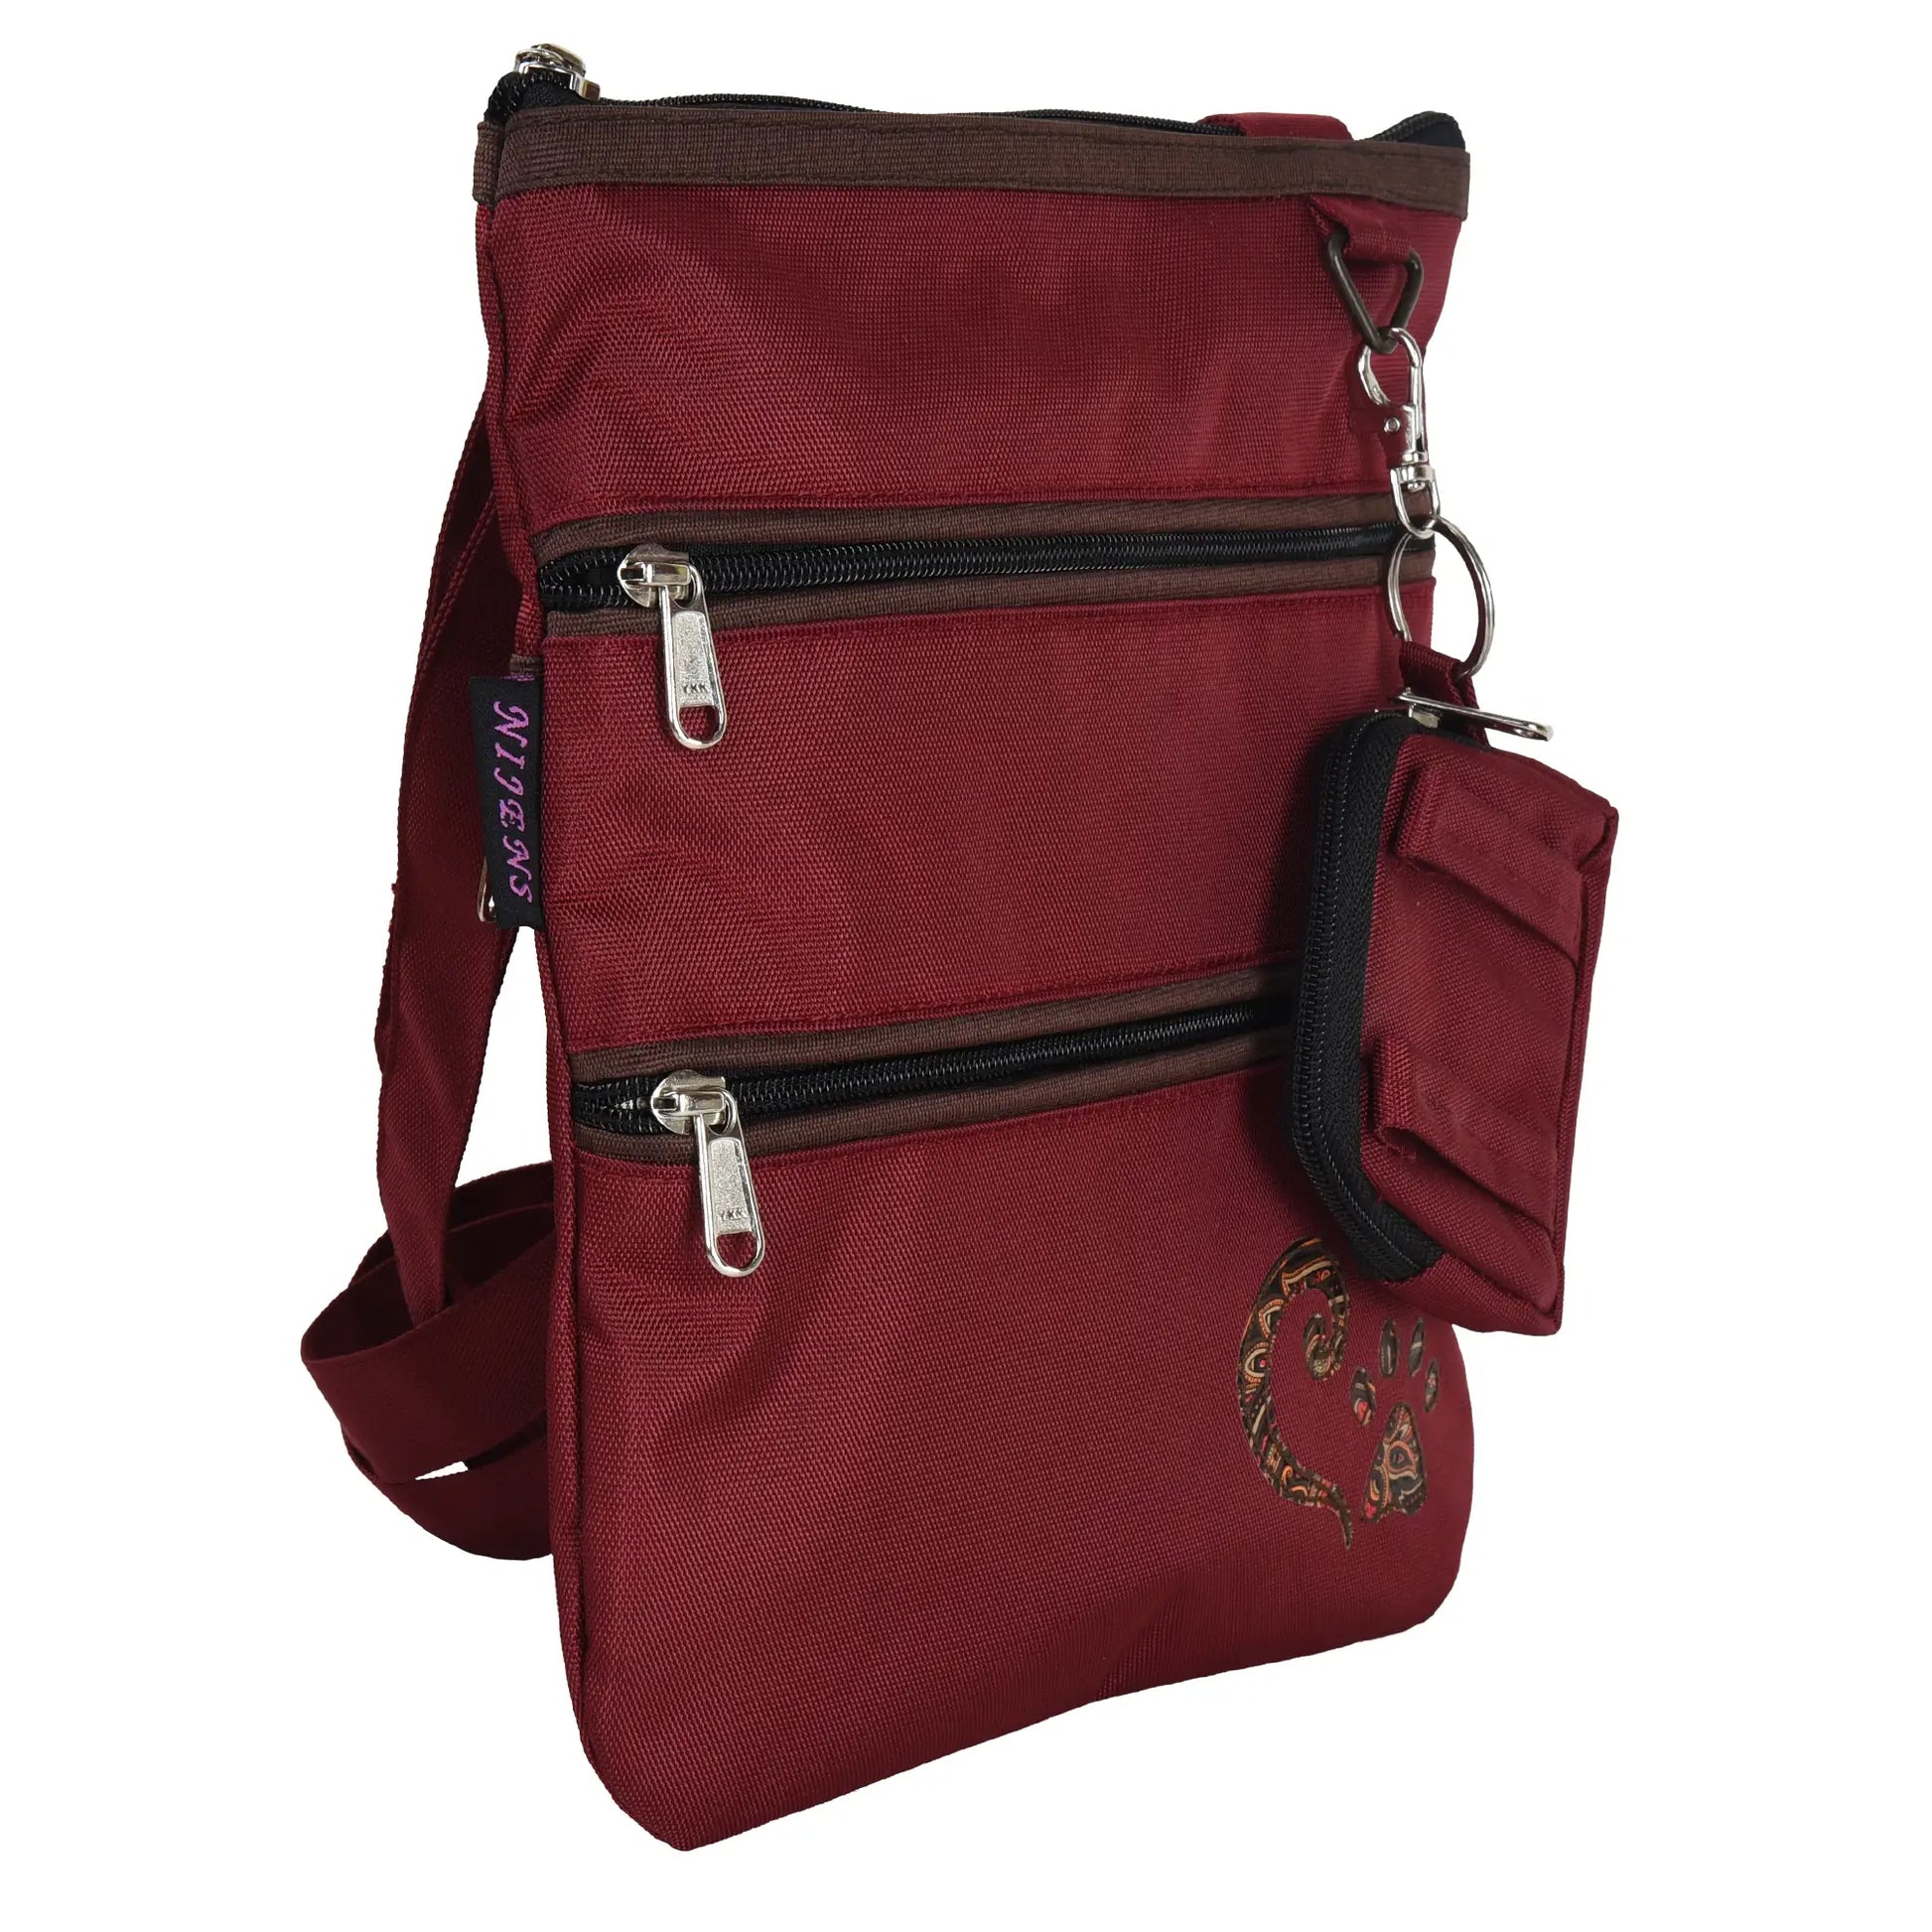 Gassi-Umhängetasche aus wasserabweisenden Stoff Rot mit Pfote Herz Applikation, mit 4 Reißverschlusstaschen und einer extra kleinen Beuteltasche für Hundekotbeutel zum Anhängen.